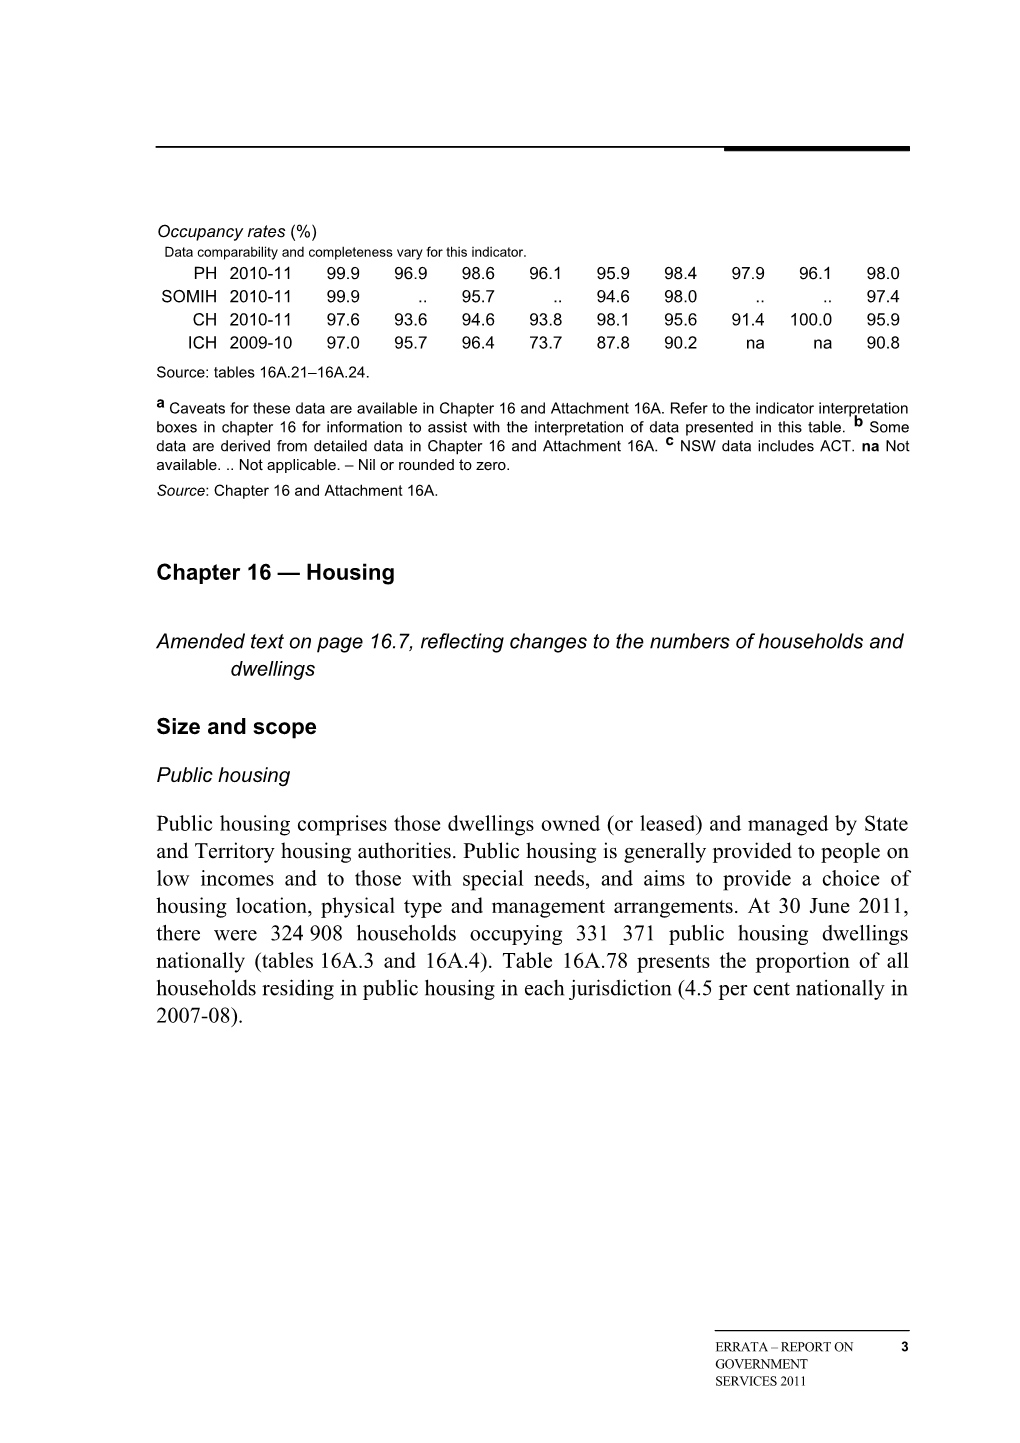 2012 Report Chapter 16 Housing Errata